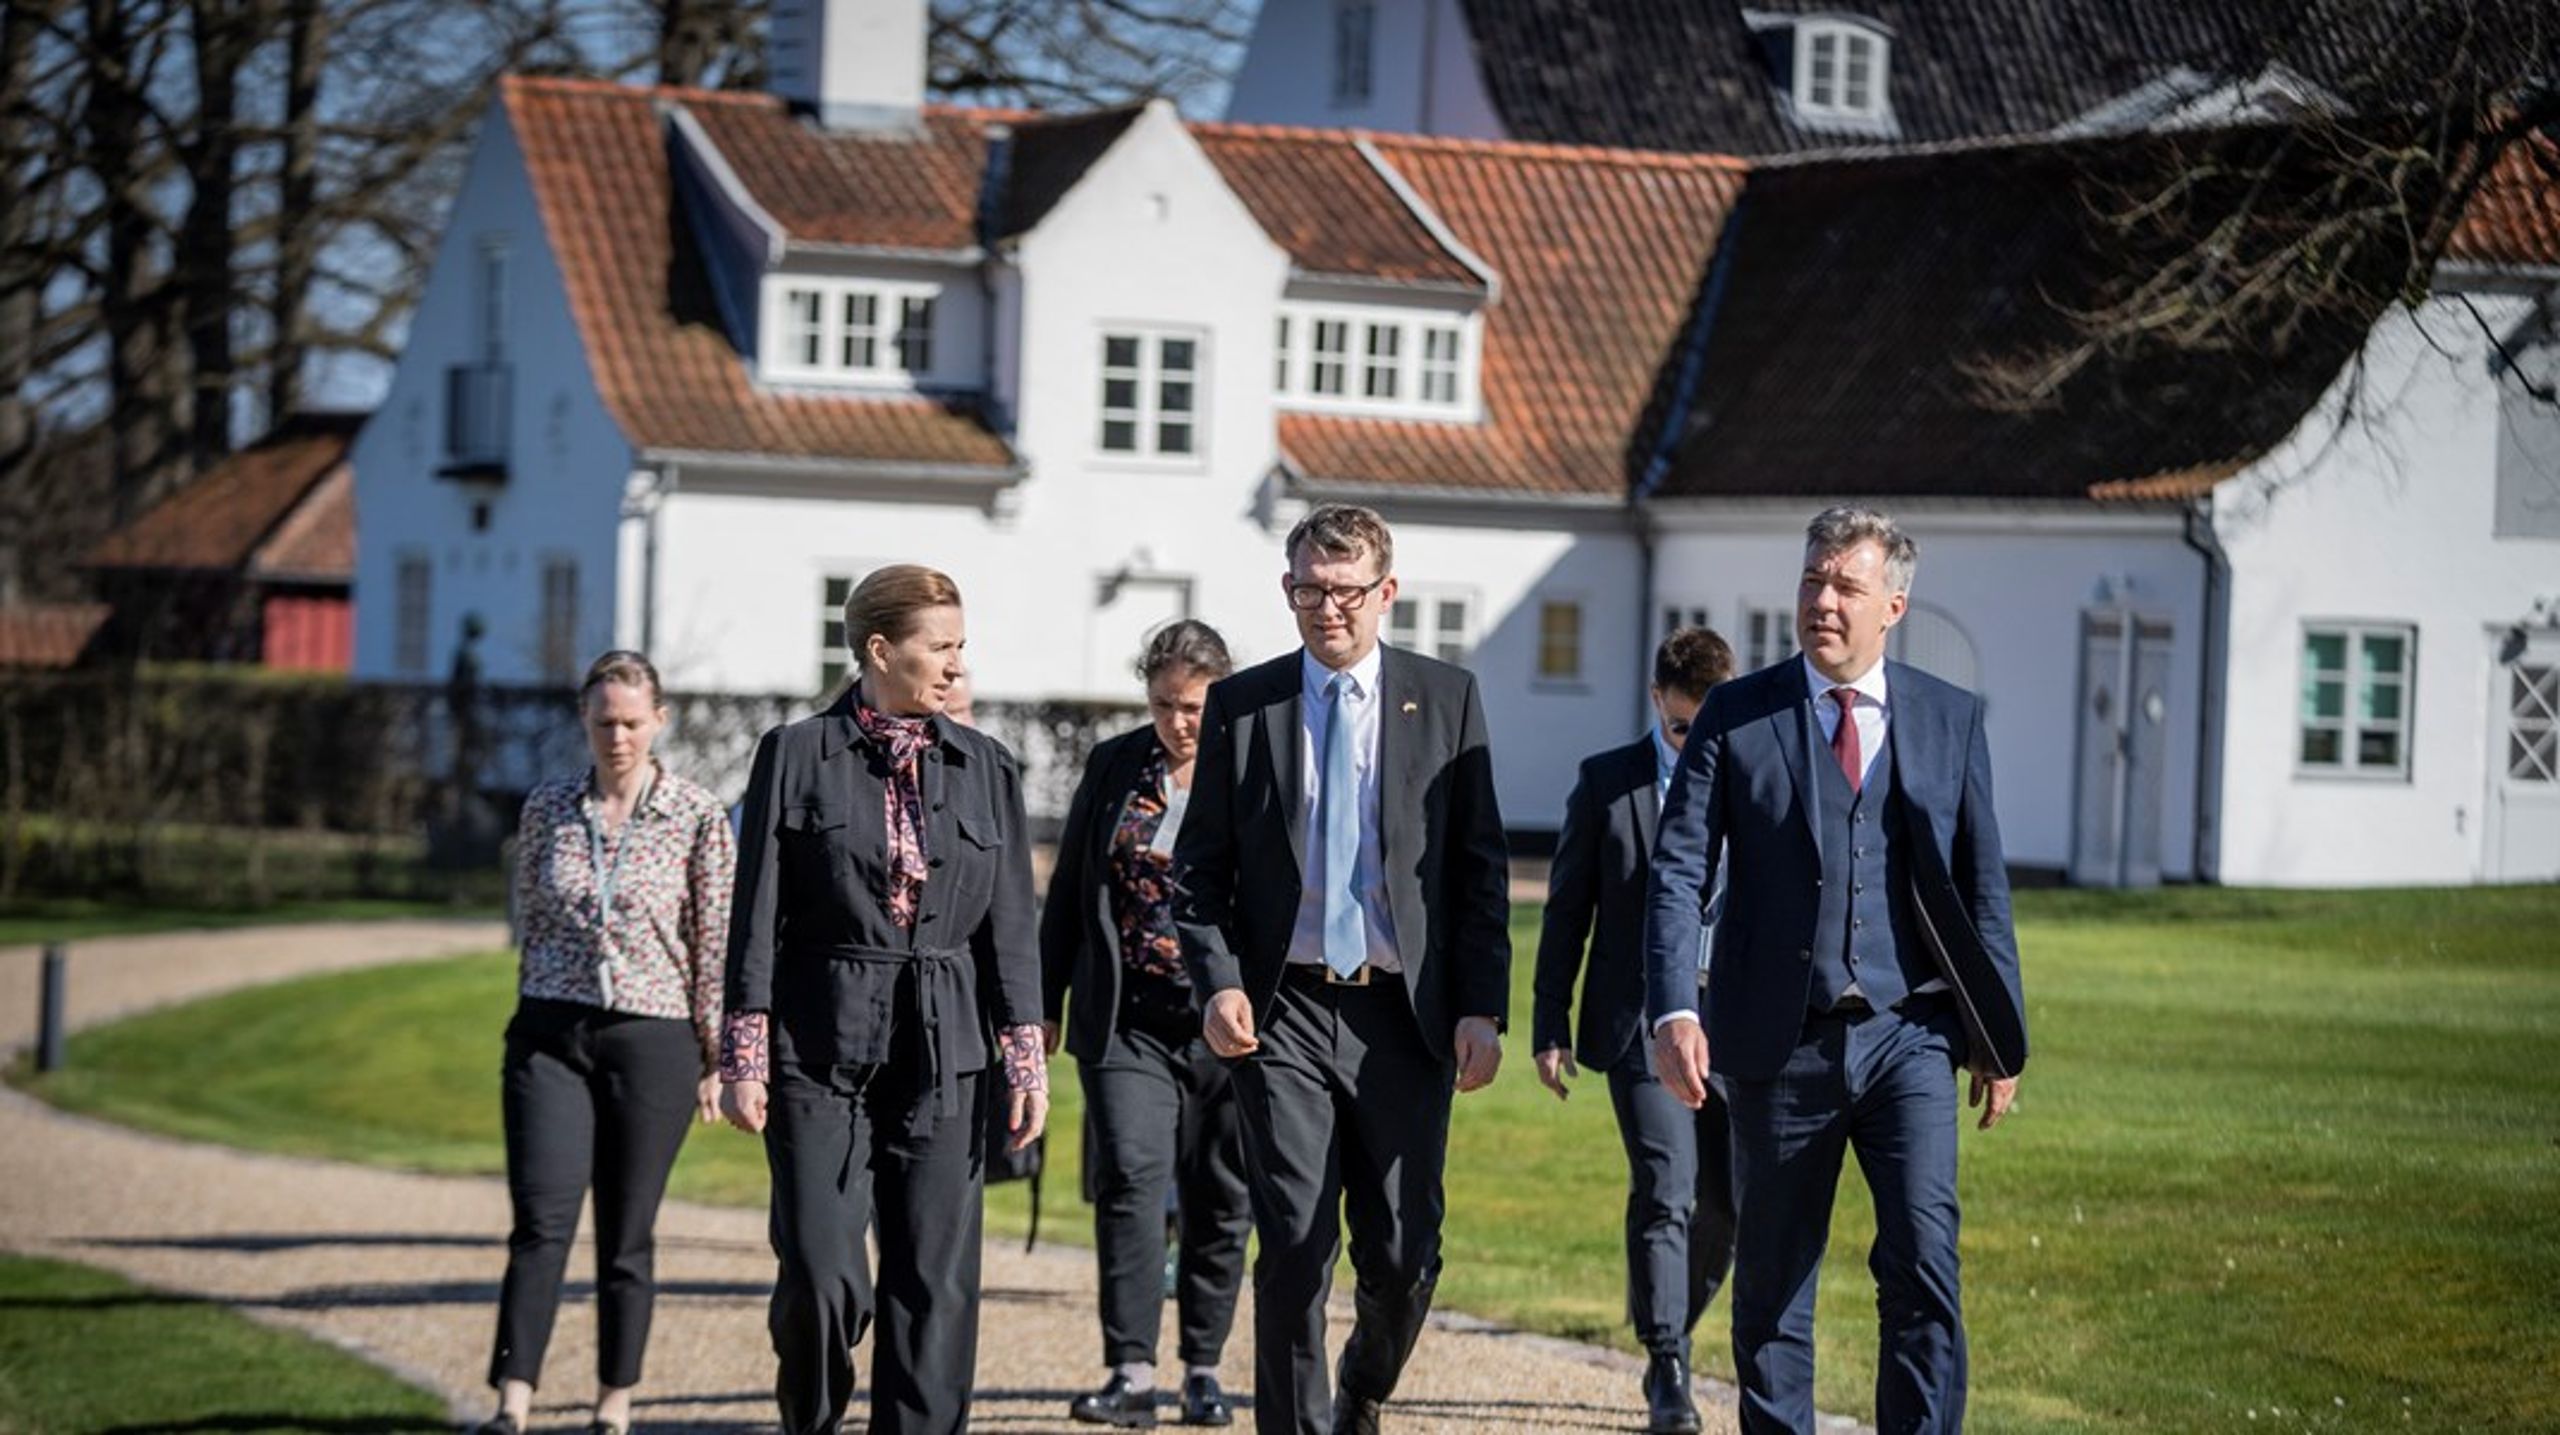 Vi bør fokusere på, hvordan Danmark som grønt foregangsland kan hjælpe EU til at sætte
højere klimamål og arbejde for at styrke den europæiske klimapolitik endnu mere, skriver&nbsp;Torsten
Hasforth &amp; Jens Mattias Clausen.